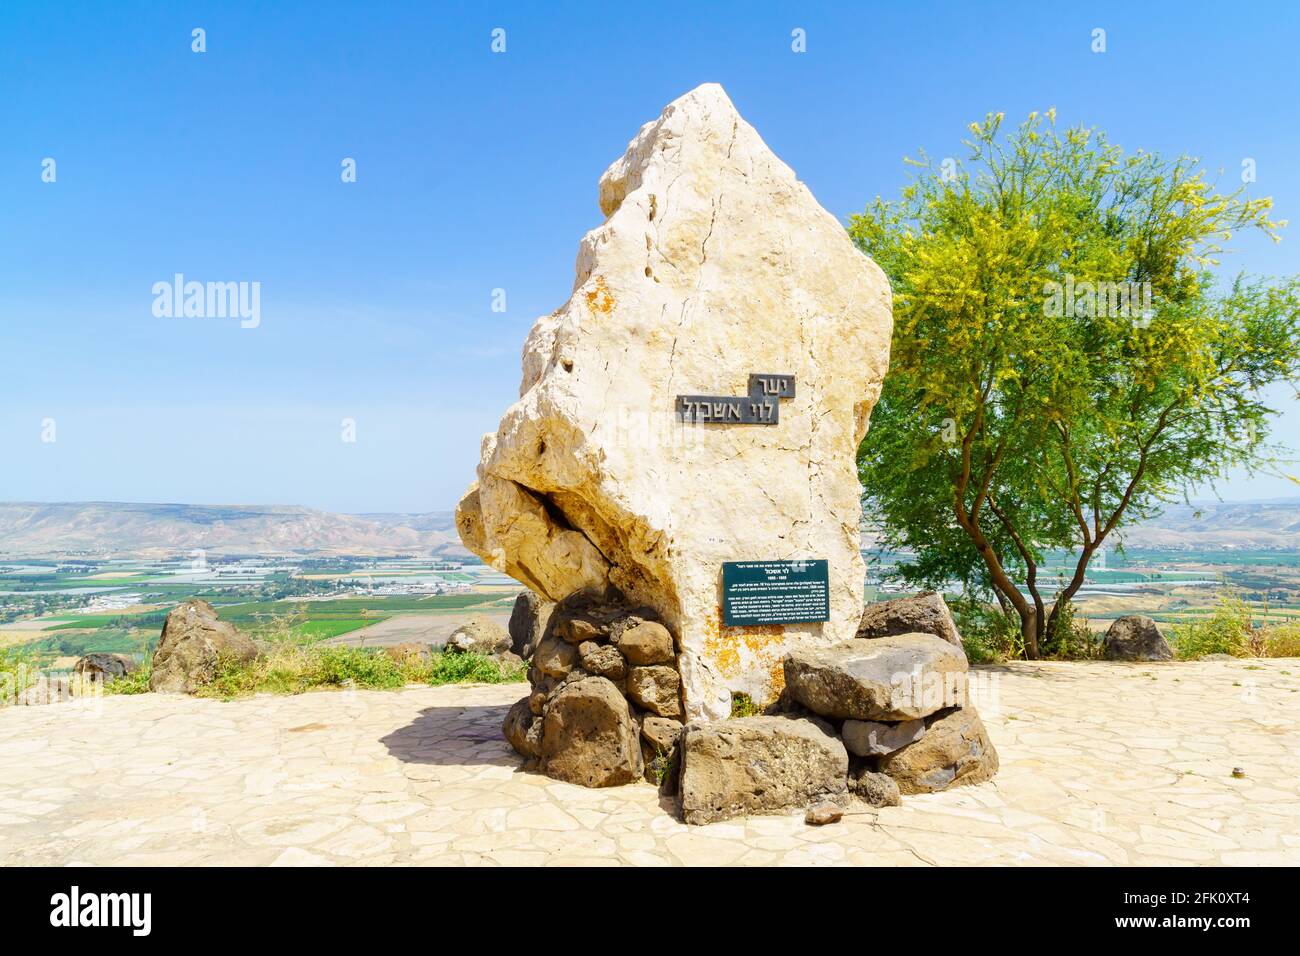 Menahamiya, Israele - 21 aprile 2021: Monumento al primo ministro Levi Eshkol, e il paesaggio della bassa valle del fiume Giordano. Israele settentrionale Foto Stock